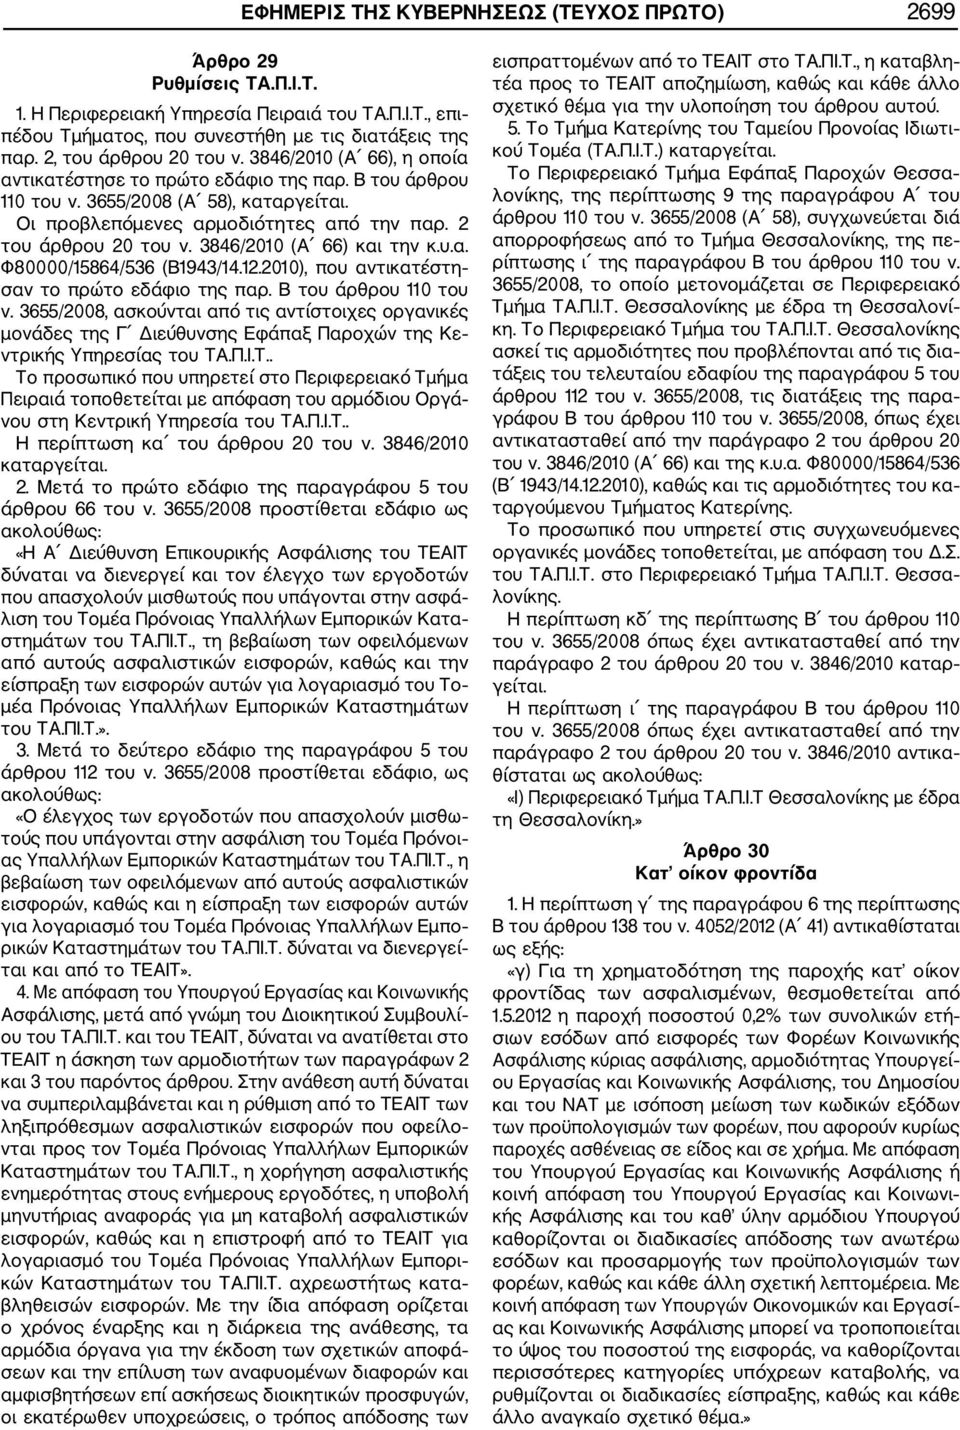 2 του άρθρου 20 του ν. 3846/2010 (Α 66) και την κ.υ.α. Φ80000/15864/536 (Β1943/14.12.2010), που αντικατέστη σαν το πρώτο εδάφιο της παρ. Β του άρθρου 110 του ν.